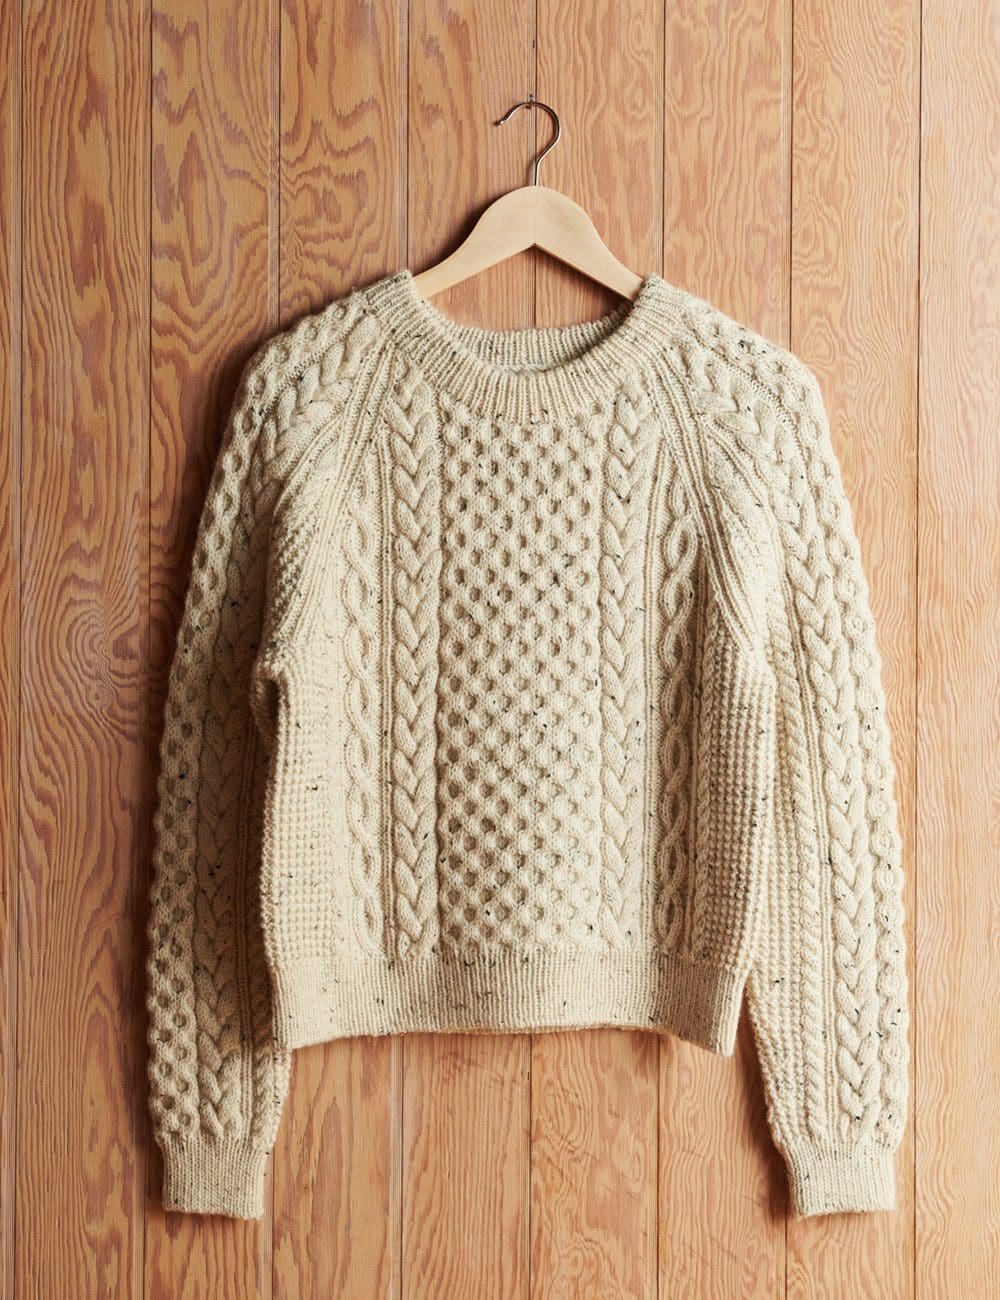 Cara-sweater-3-le-knit-lene-holme-samsoee-samsøe-strikkeopskrift-p